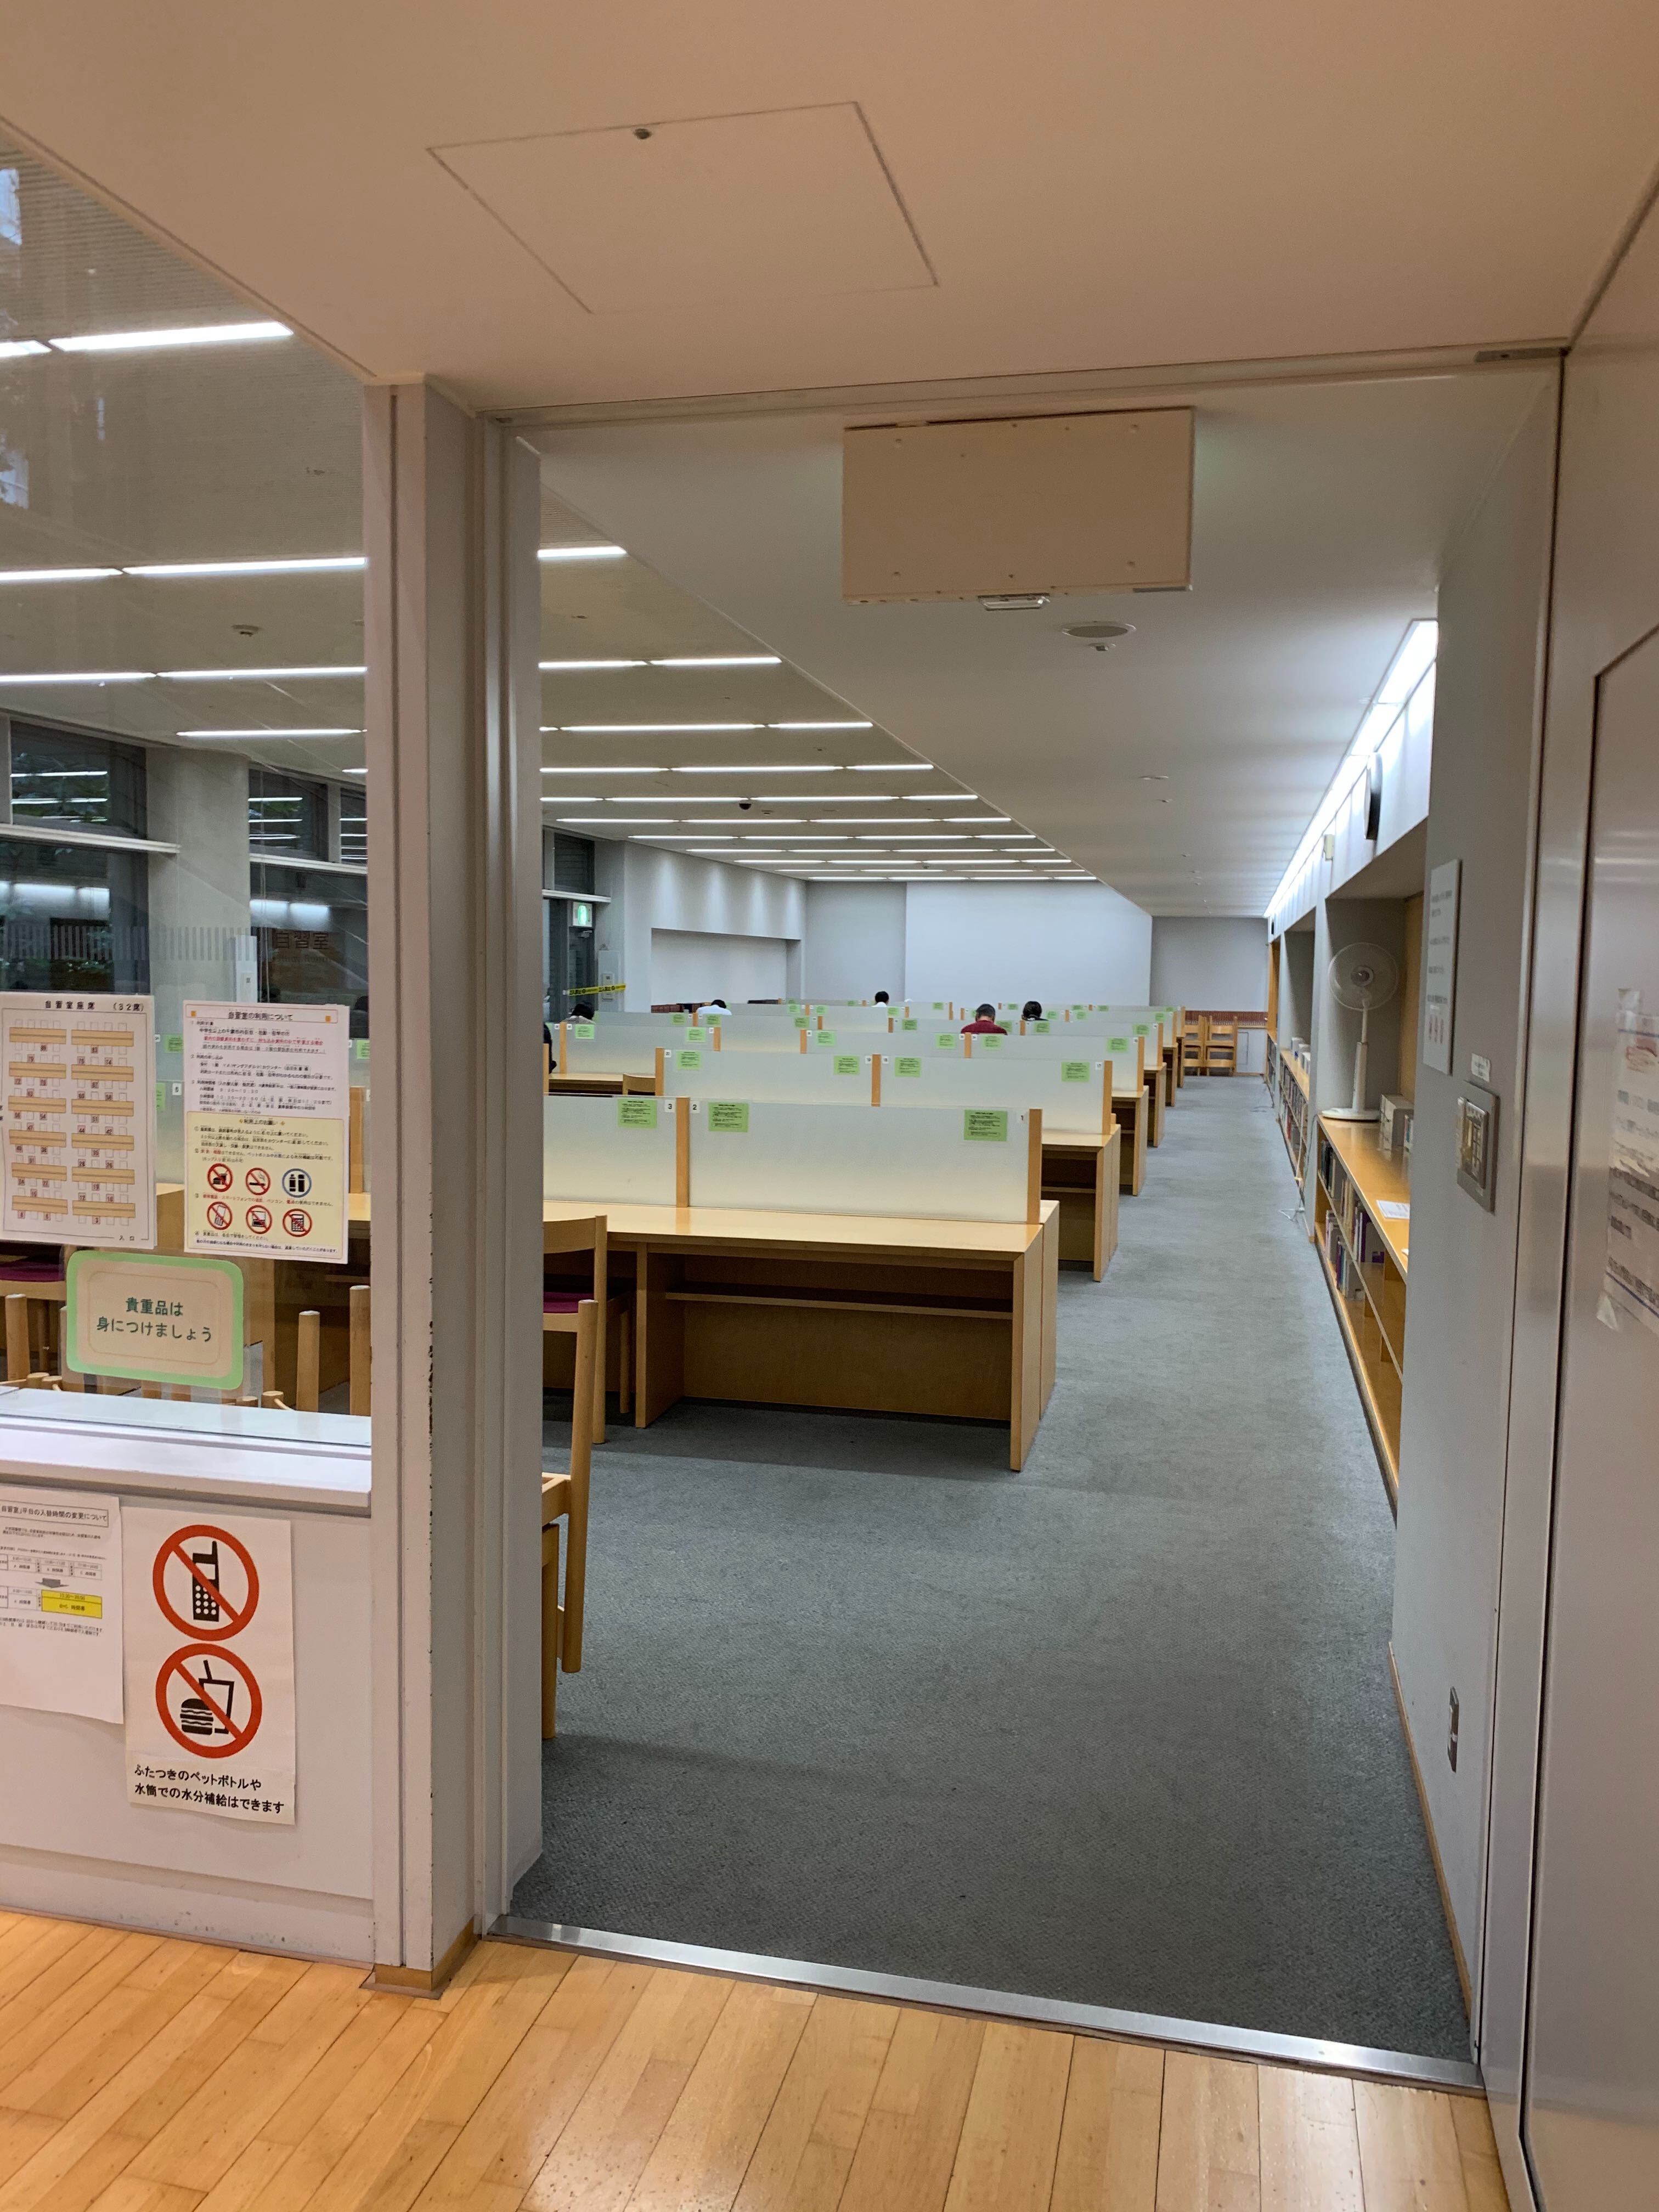 千葉市中央図書館の自習室